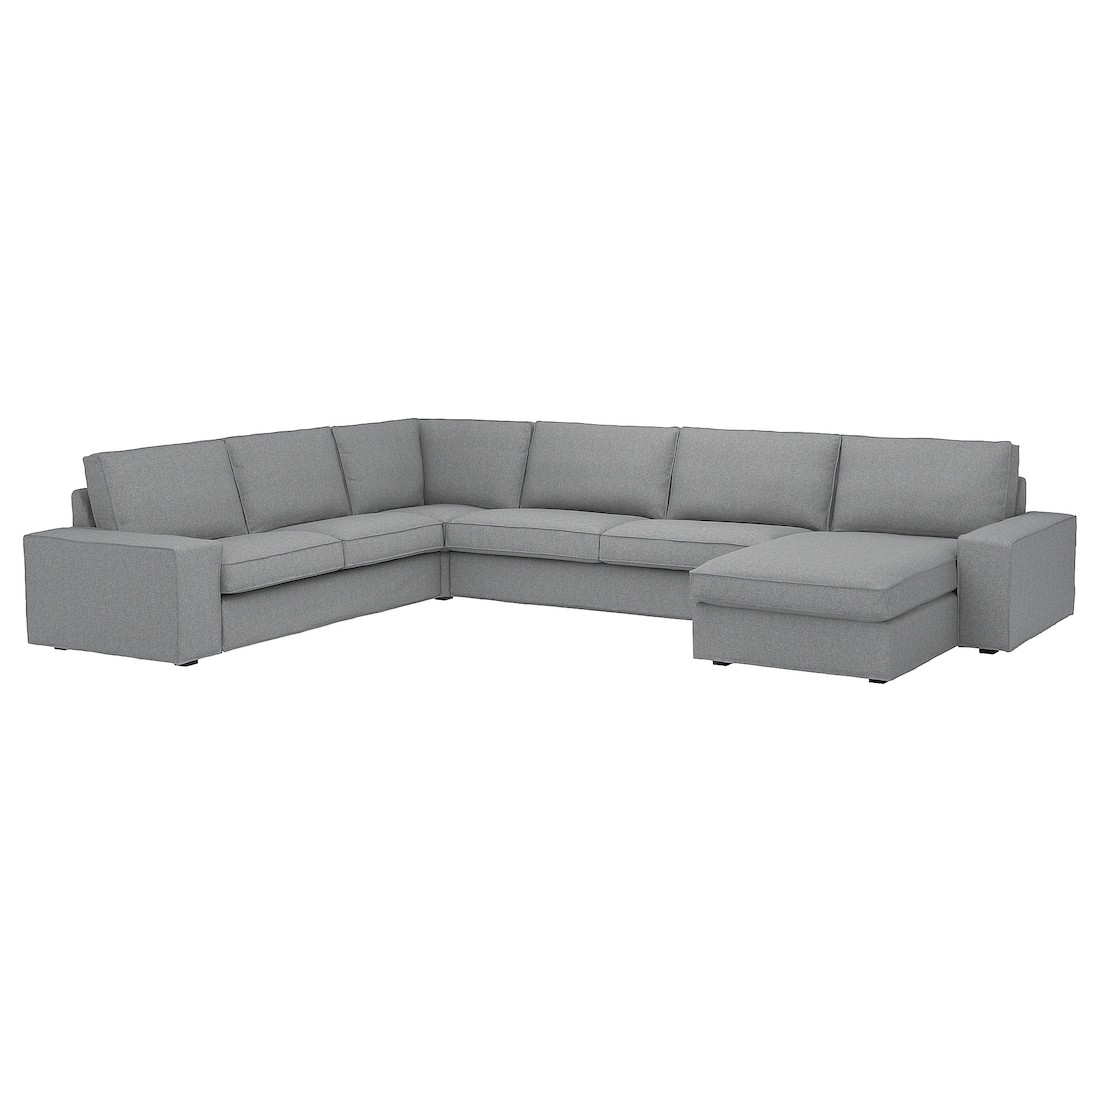 KIVIK КИВИК 6-местный угловой диван с козеткой, Tibbleby бежевый / серый